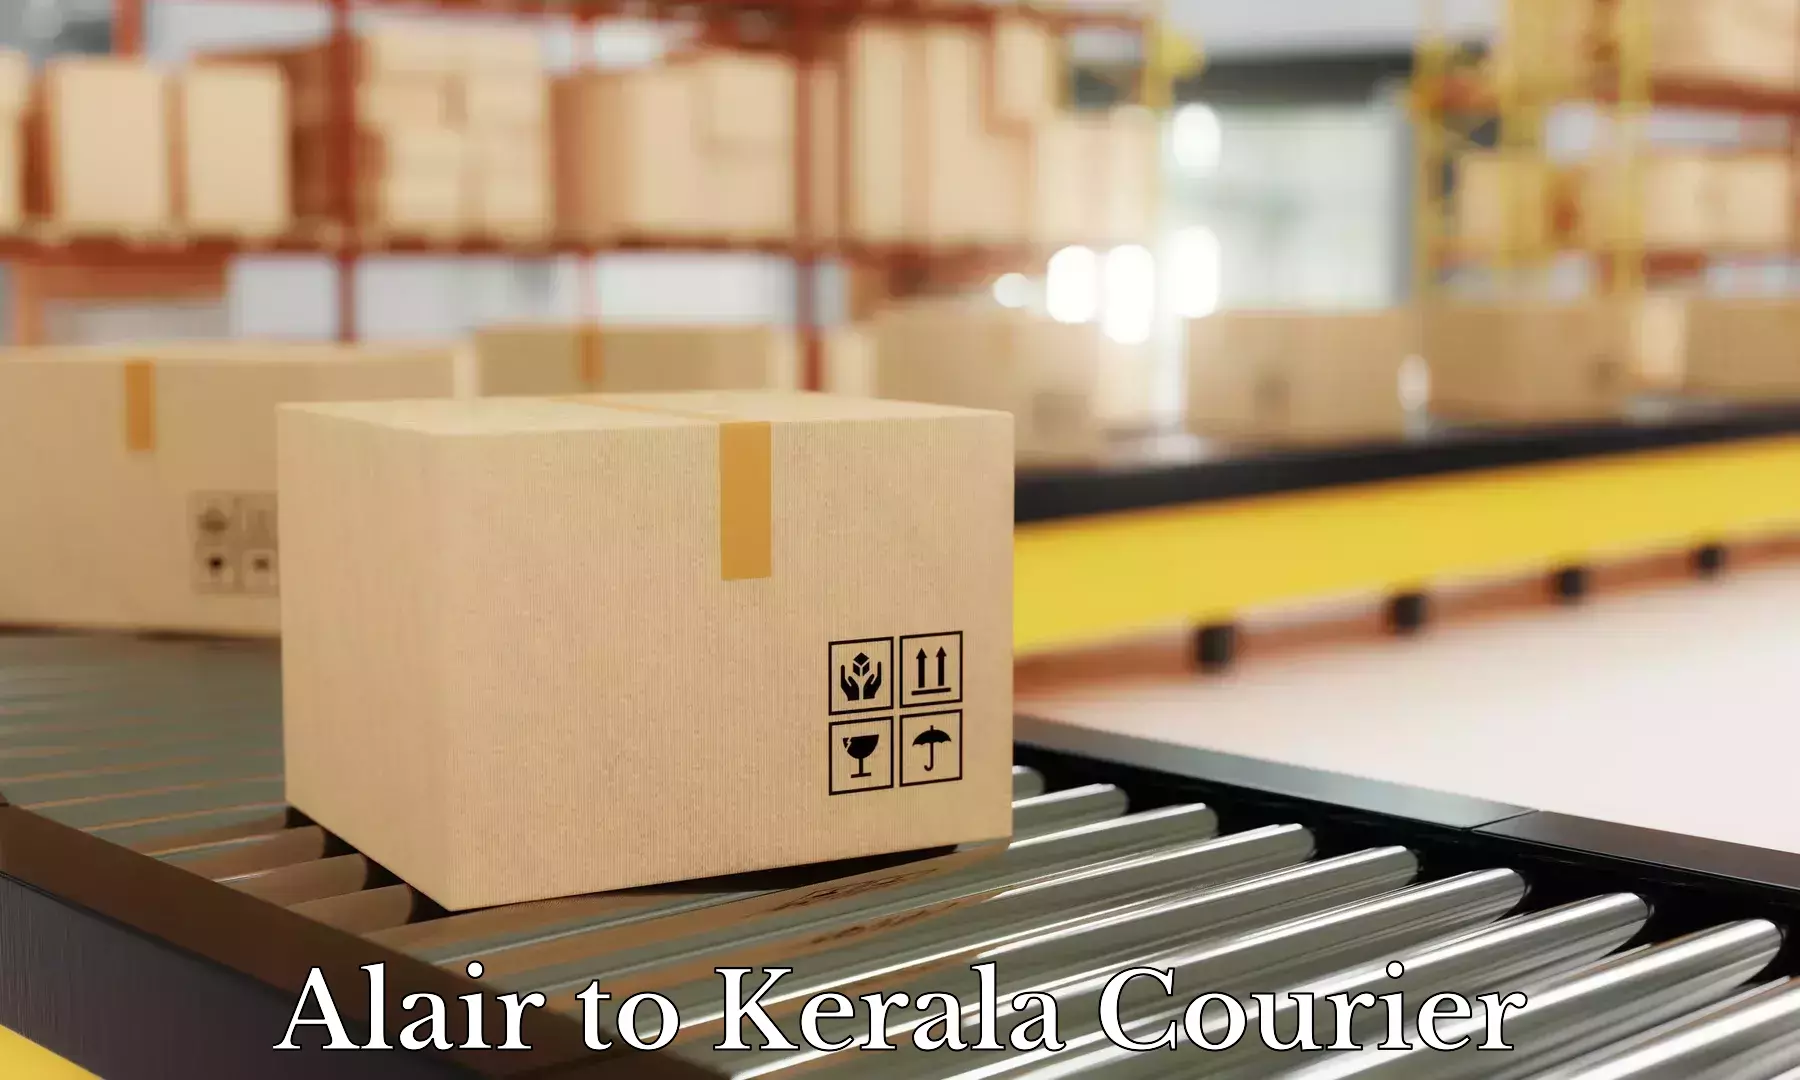 Baggage shipping experts Alair to Kerala